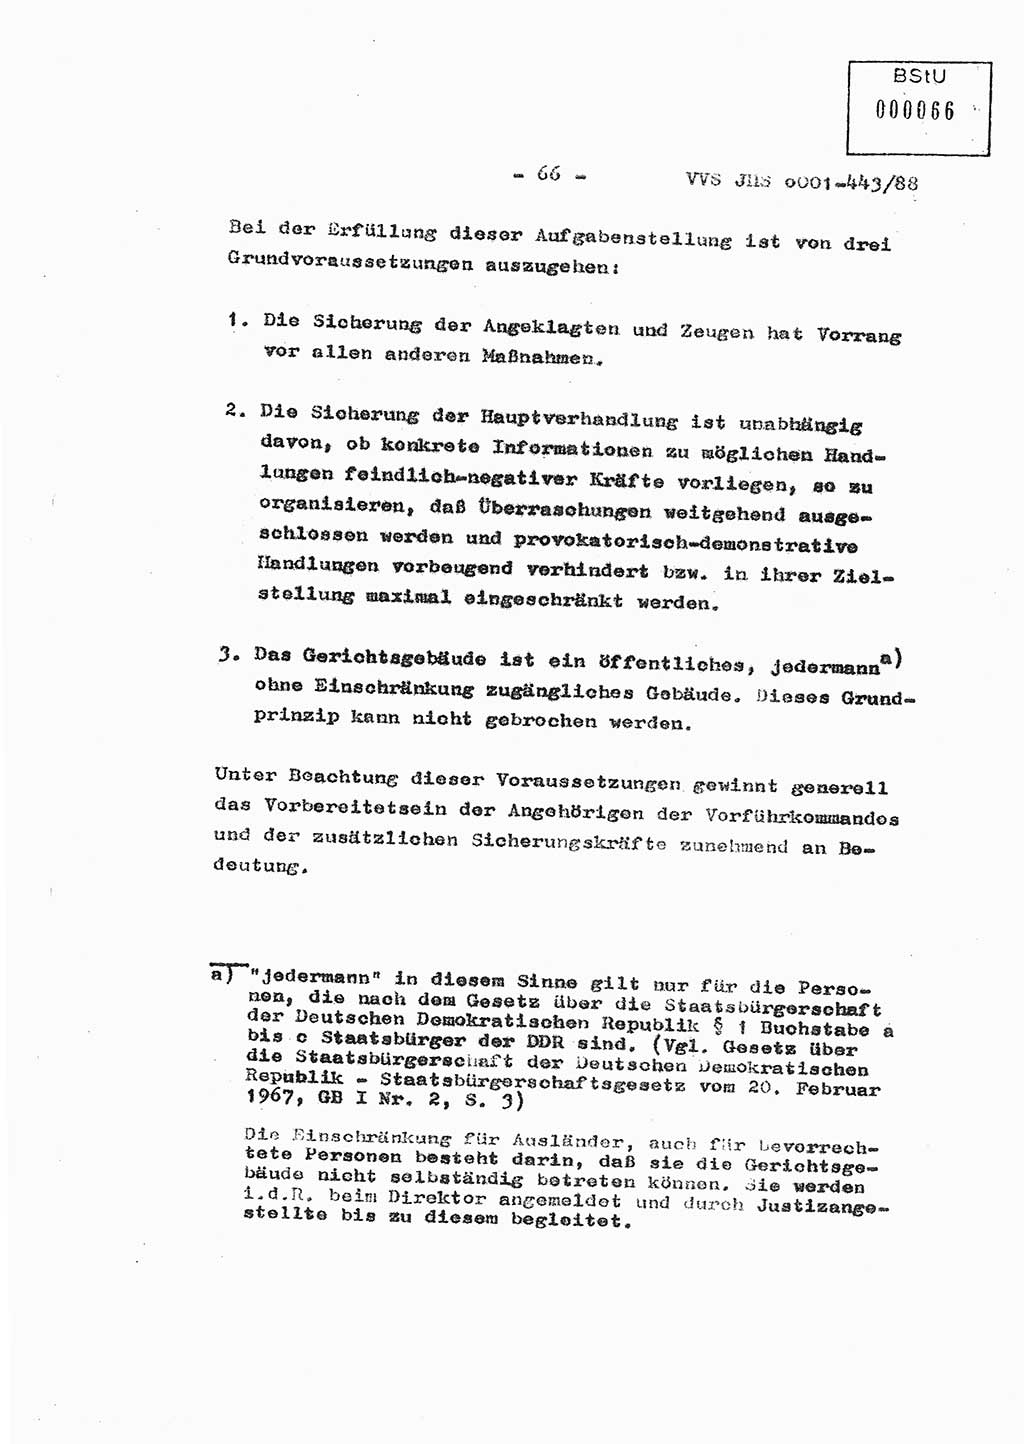 Diplomarbeit Hauptmann Michael Rast (Abt. ⅩⅣ), Major Bernd Rahaus (Abt. ⅩⅣ), Ministerium für Staatssicherheit (MfS) [Deutsche Demokratische Republik (DDR)], Juristische Hochschule (JHS), Vertrauliche Verschlußsache (VVS) o001-443/88, Potsdam 1988, Seite 66 (Dipl.-Arb. MfS DDR JHS VVS o001-443/88 1988, S. 66)